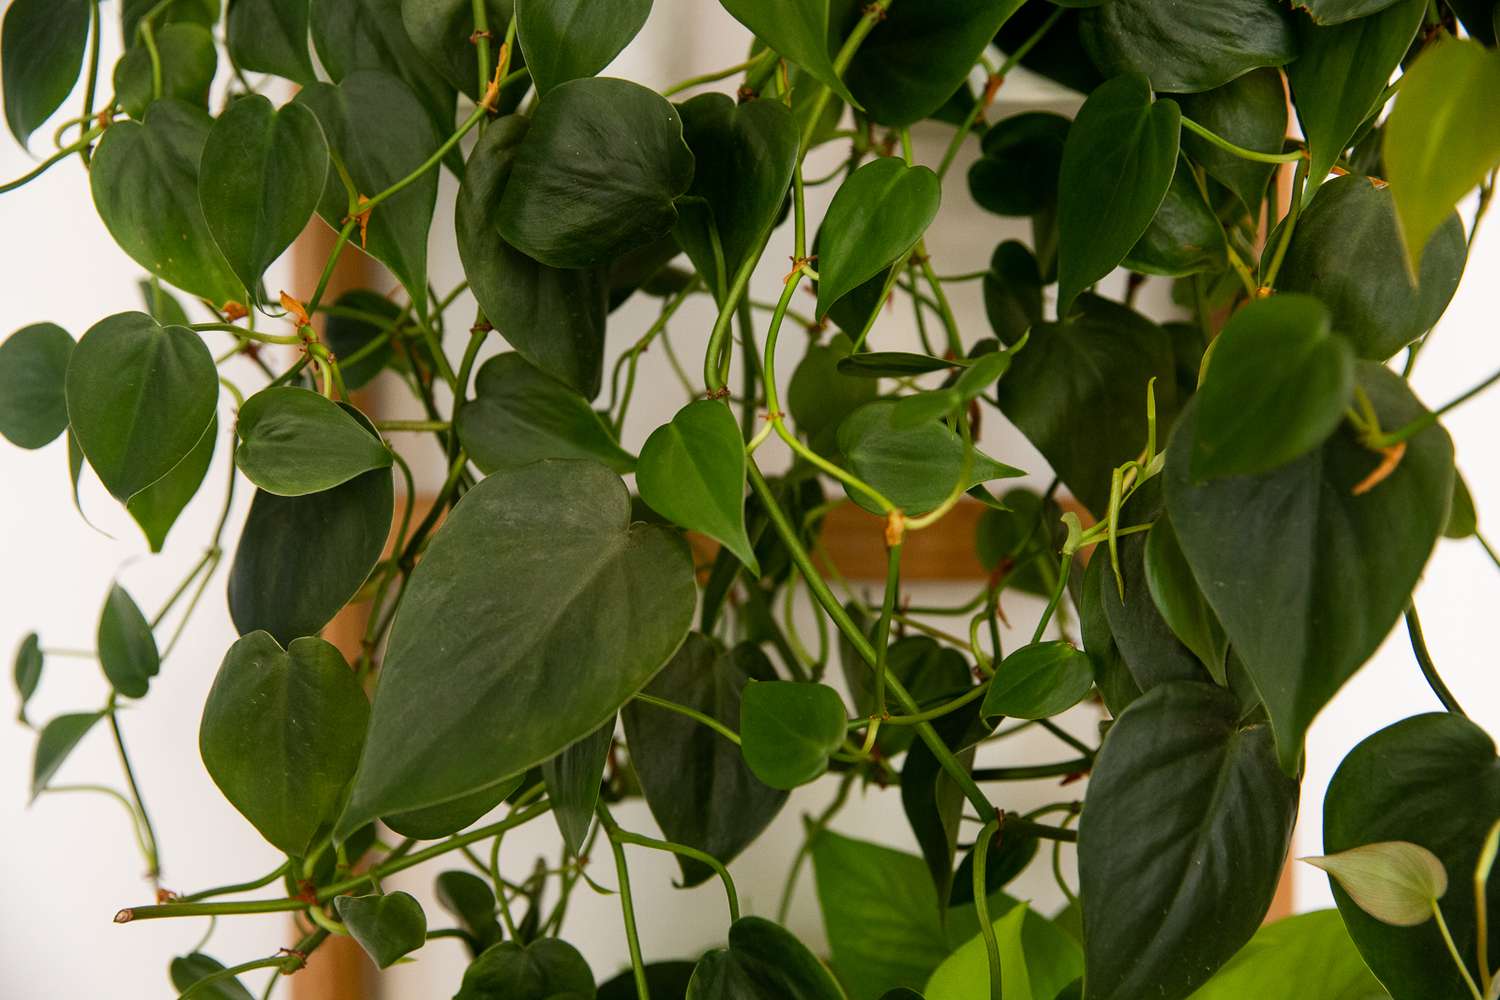 Planta de filodendro de hoja acorazonada de color verde oscuro que cuelga de tallos enredaderas